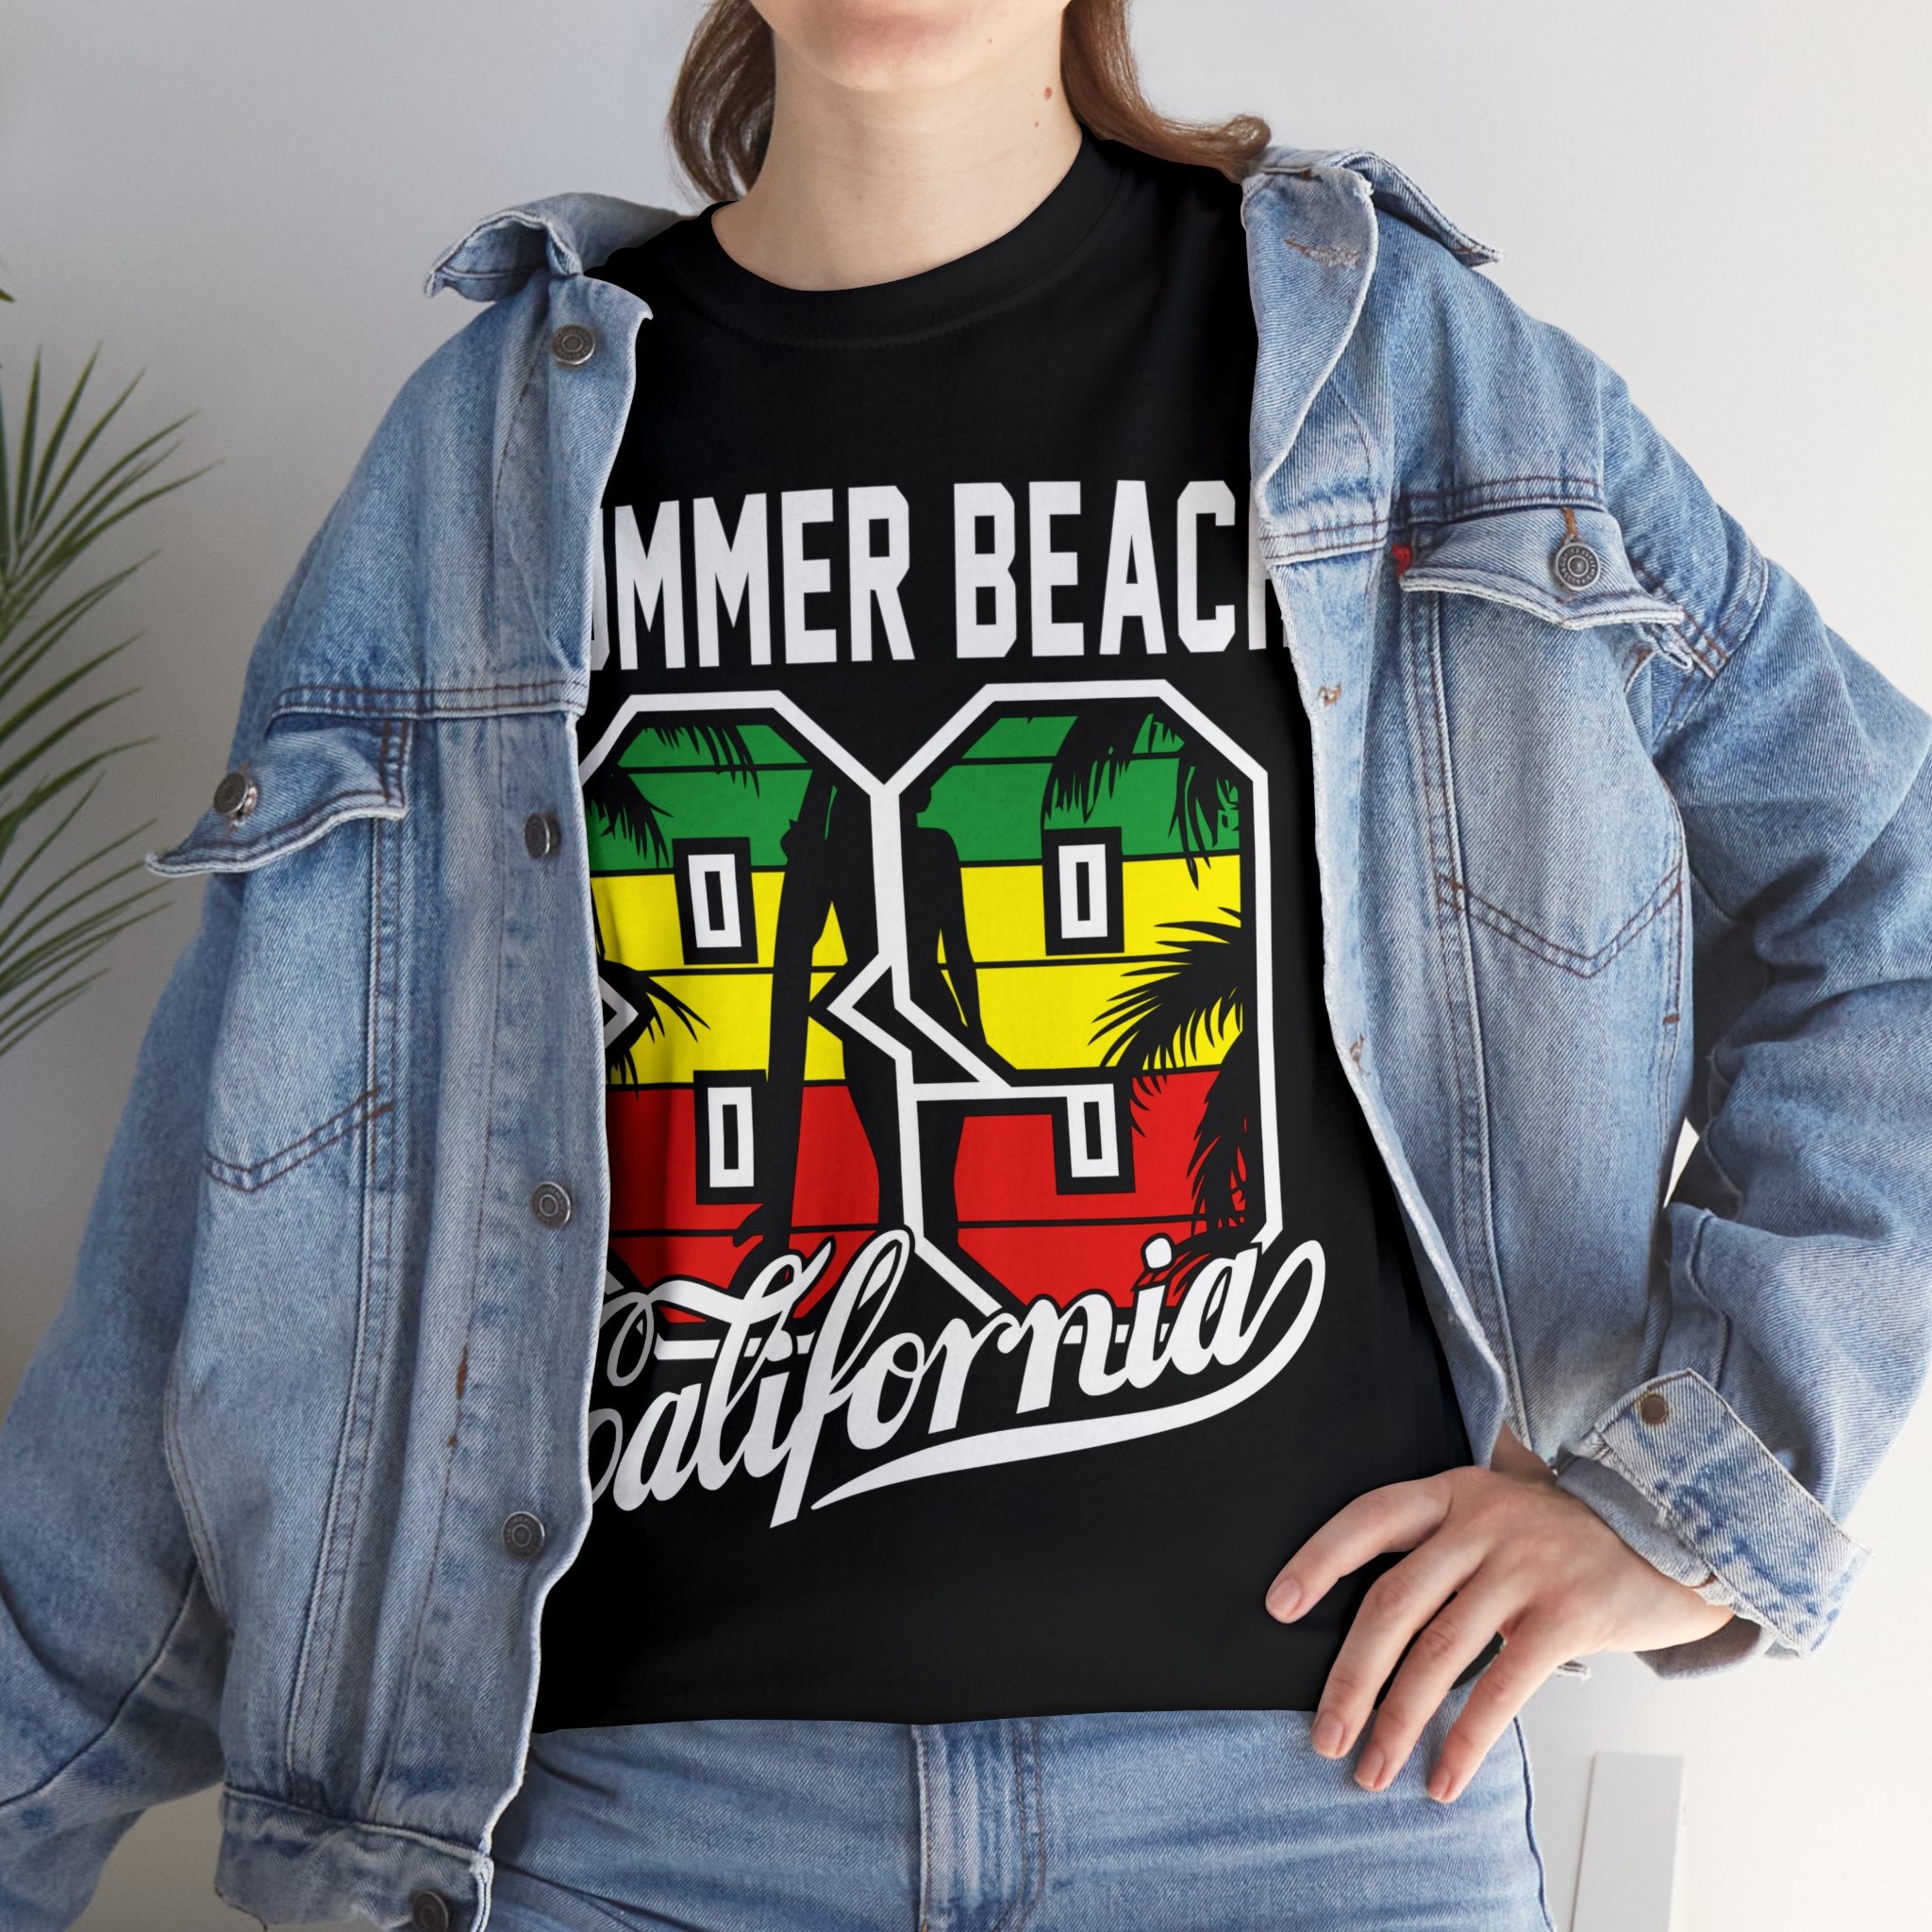 California Beach San Diego Surfing Camping Fans T-Shirt